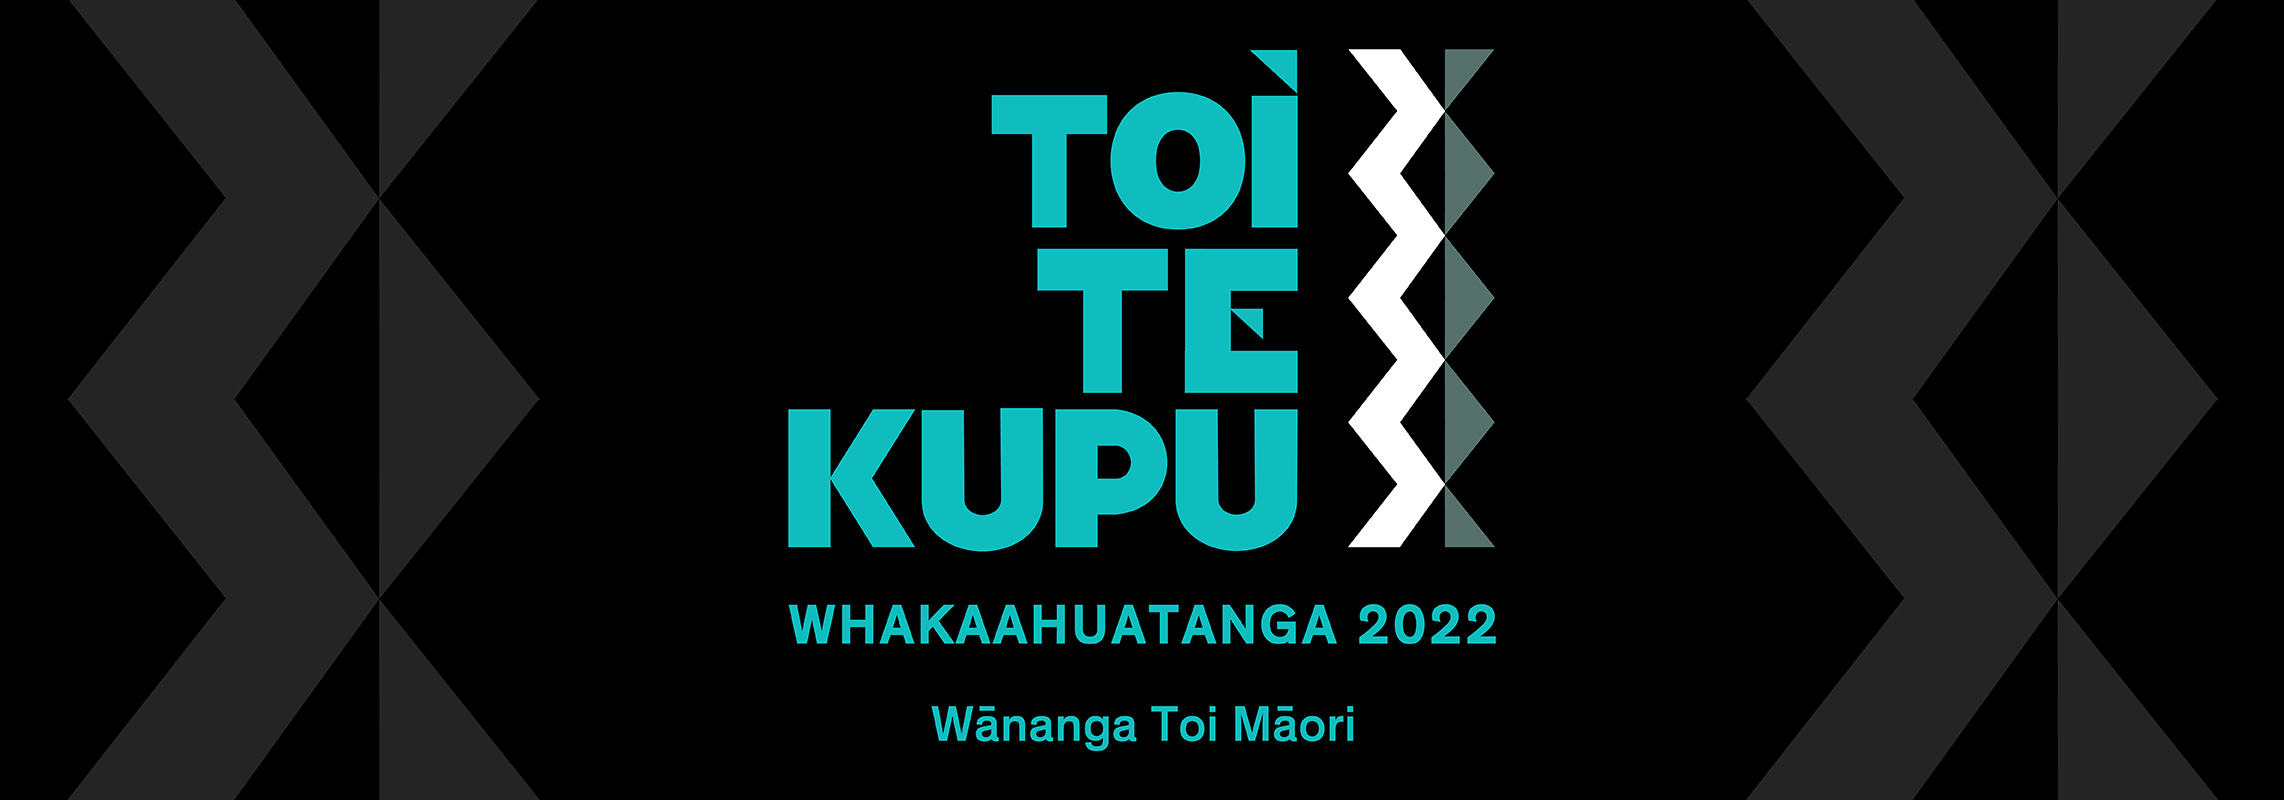 Toi Te Kupu: Whakaahuatanga